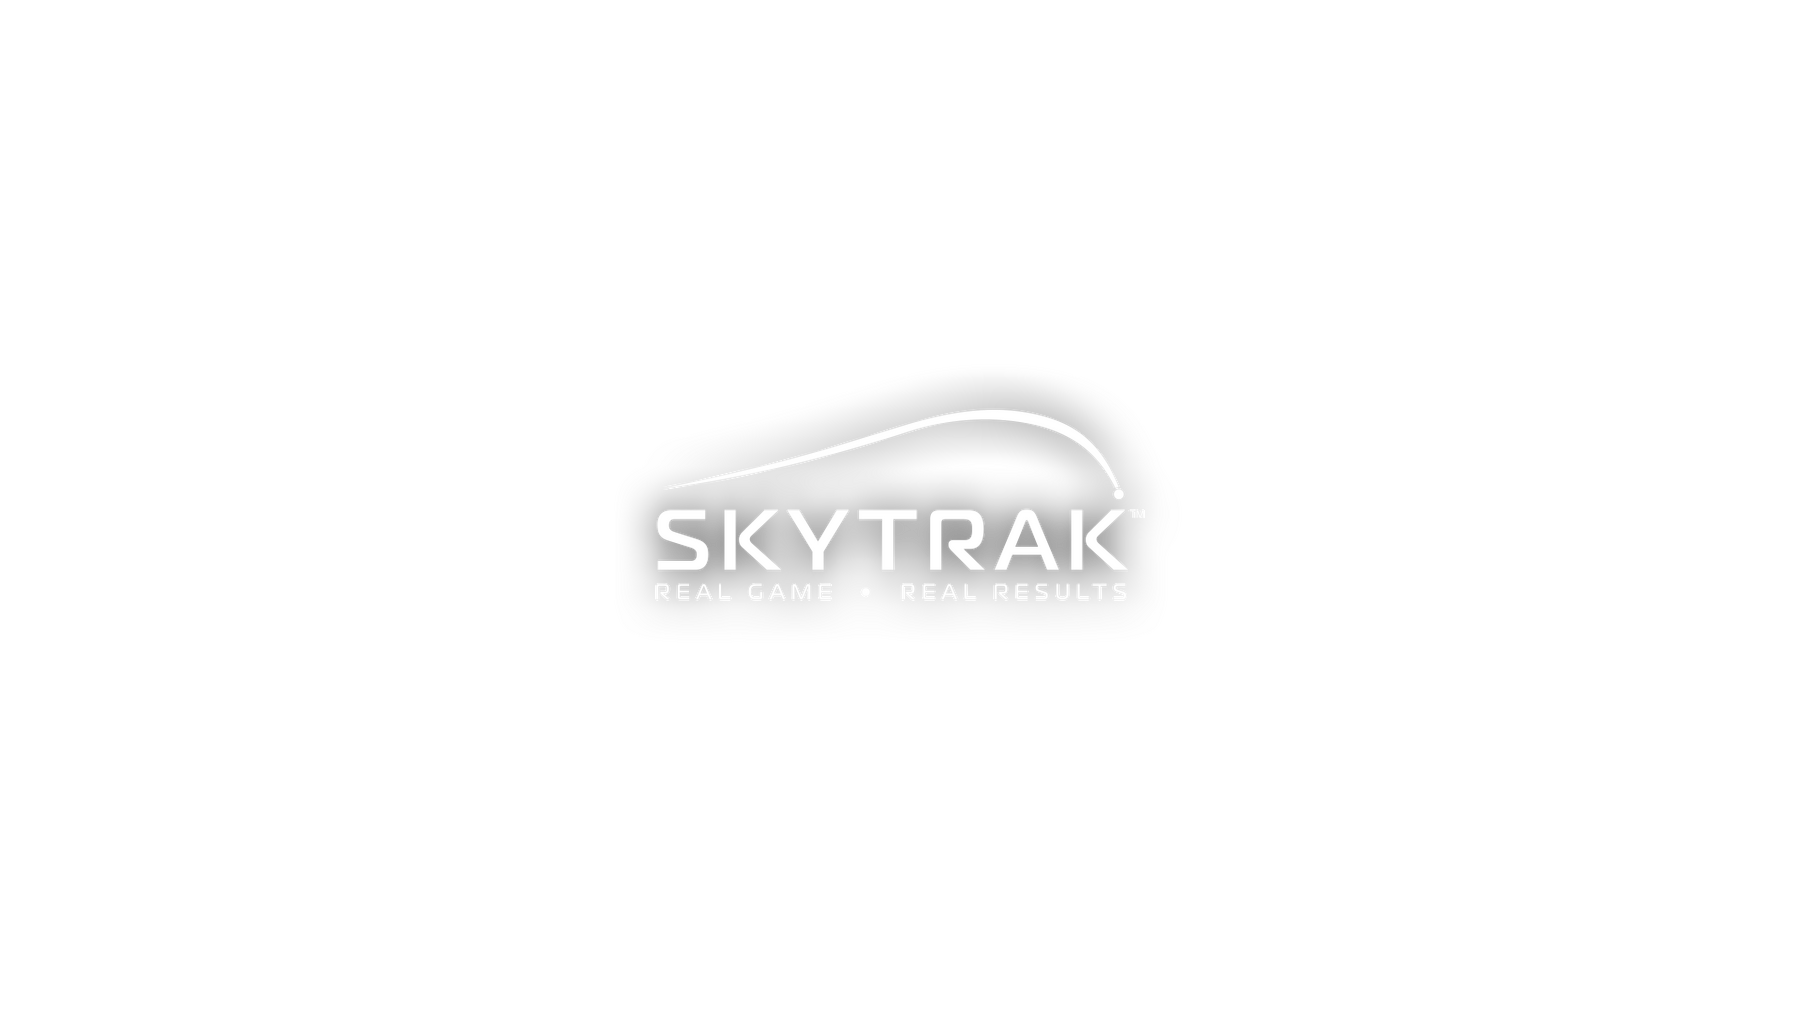 Skytrac logo center